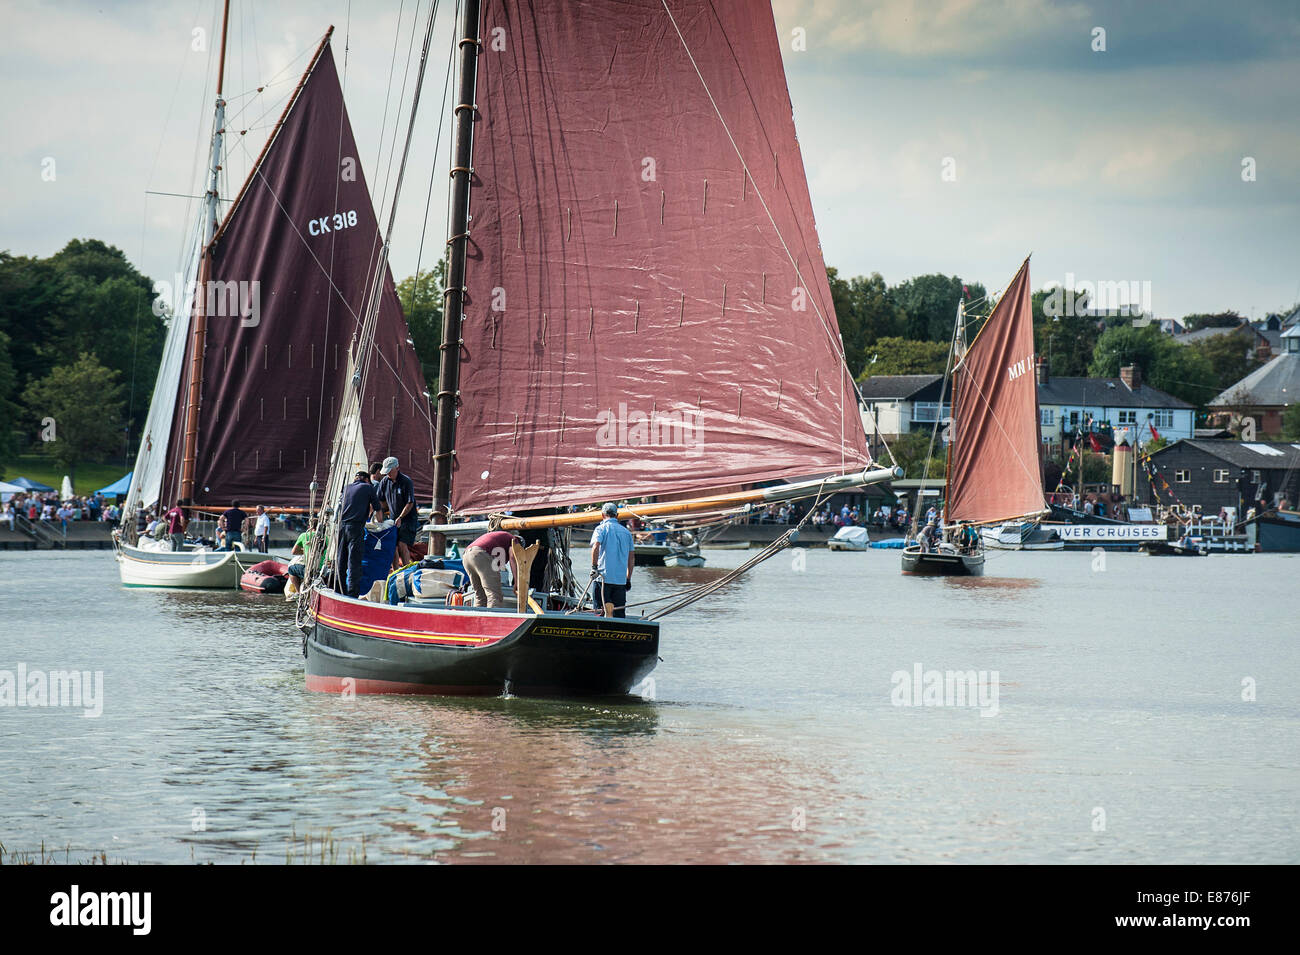 Verschiedene segeln Handwerk in die spektakuläre Parade der Segel an der Regatta Maldon, Essex, teilnehmen. Stockfoto